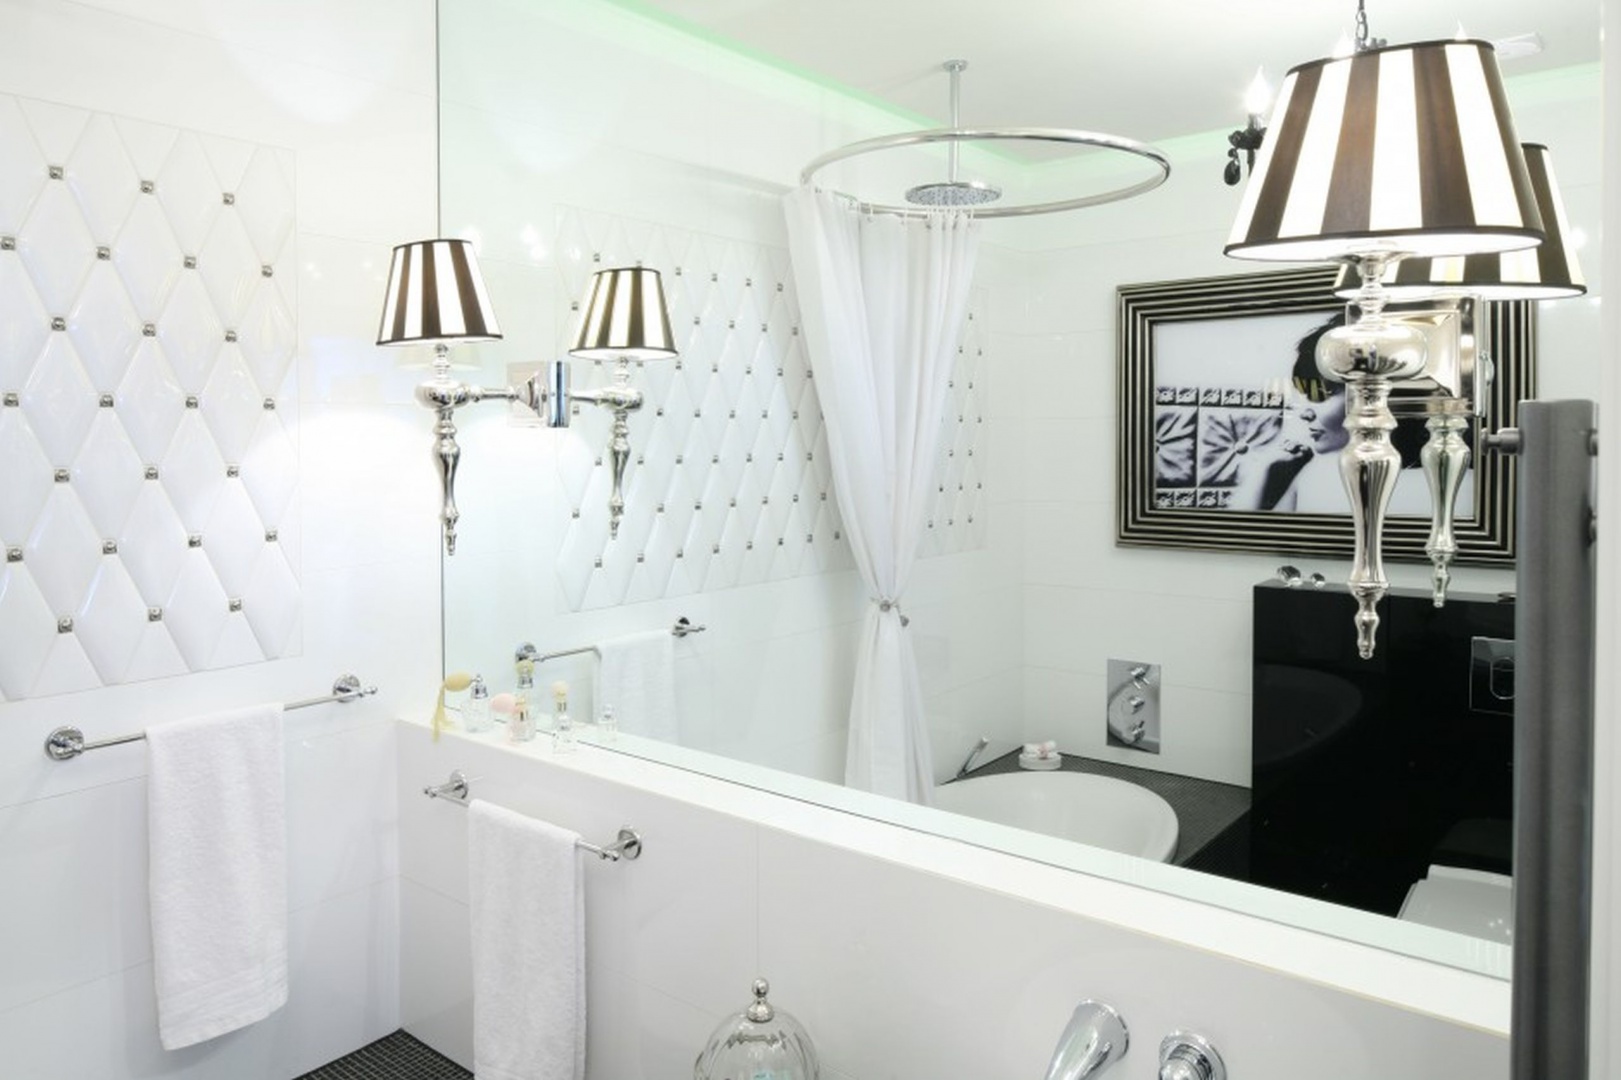 Biała łazienka to eleganckie i kobiece wnętrze w modnymi kinkietami zamontowanymi przy lustrze. Projekt: Małgorzata Galewska. Fot. Bartosz Jarosz.